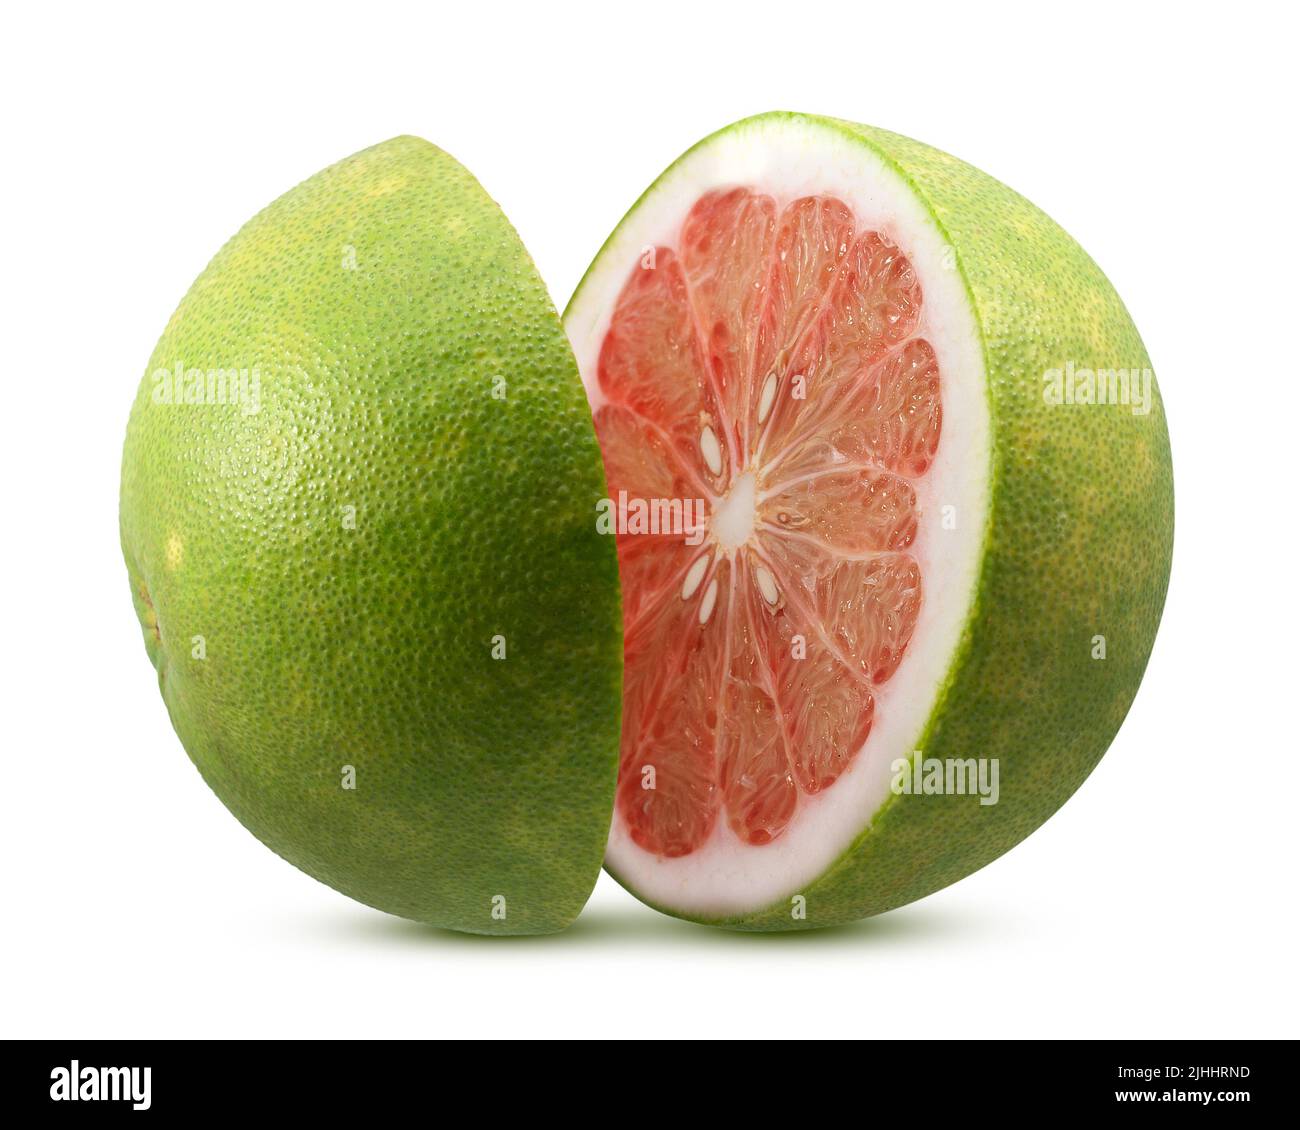 Fruit pomelo -Fotos und -Bildmaterial in hoher Auflösung - Seite 2 - Alamy